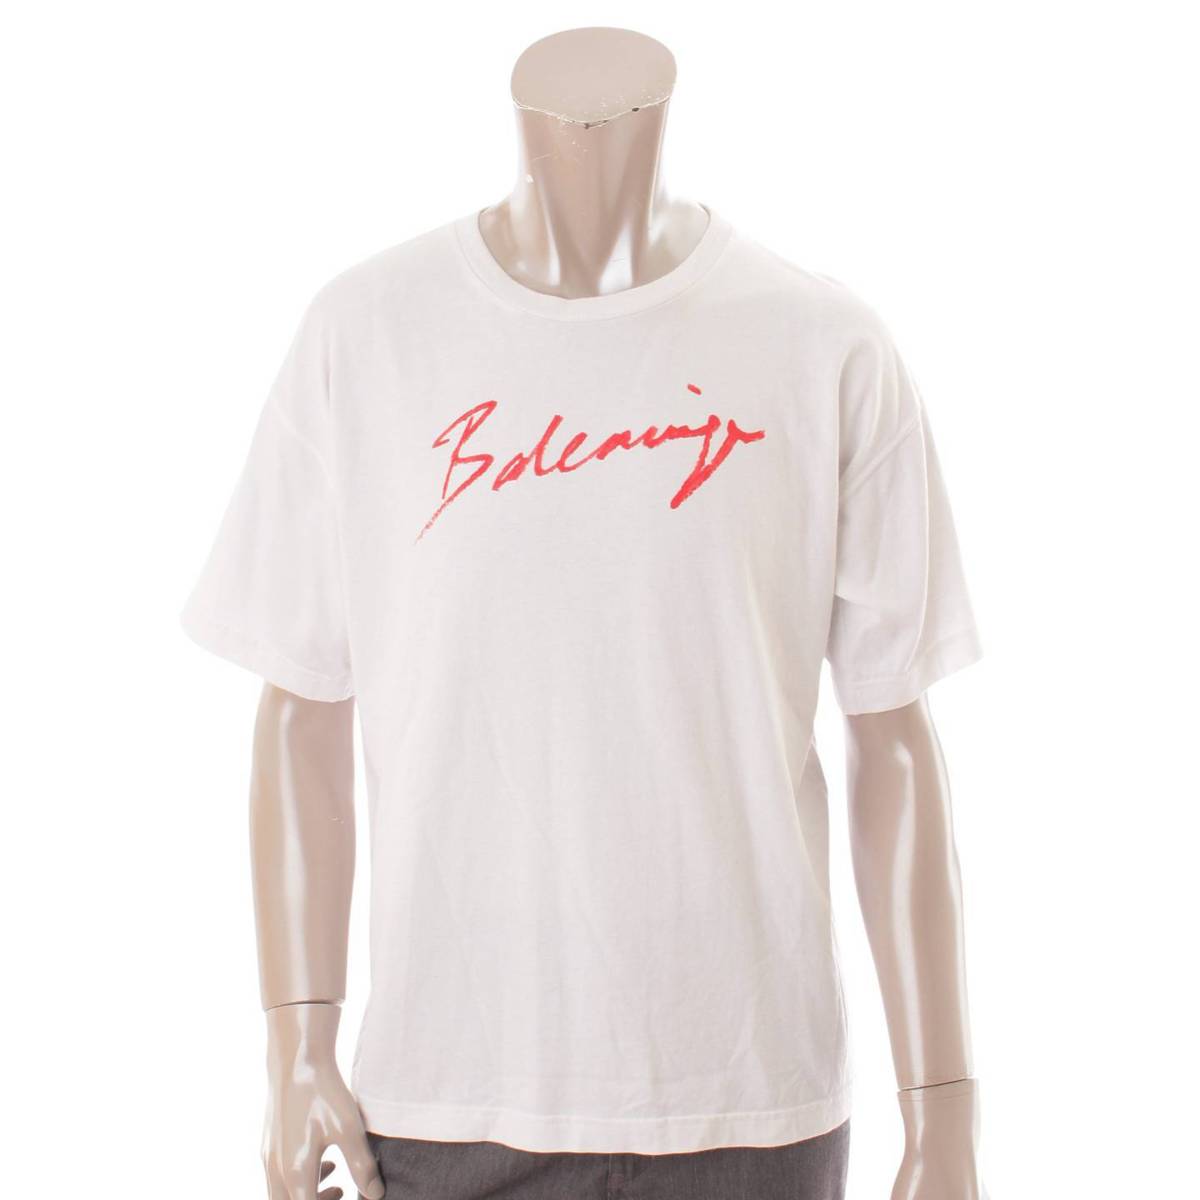 バレンシアガ(Balenciaga) 19SS メンズ シグネチャー ロゴ Tシャツ トップス 583212 ホワイト XS